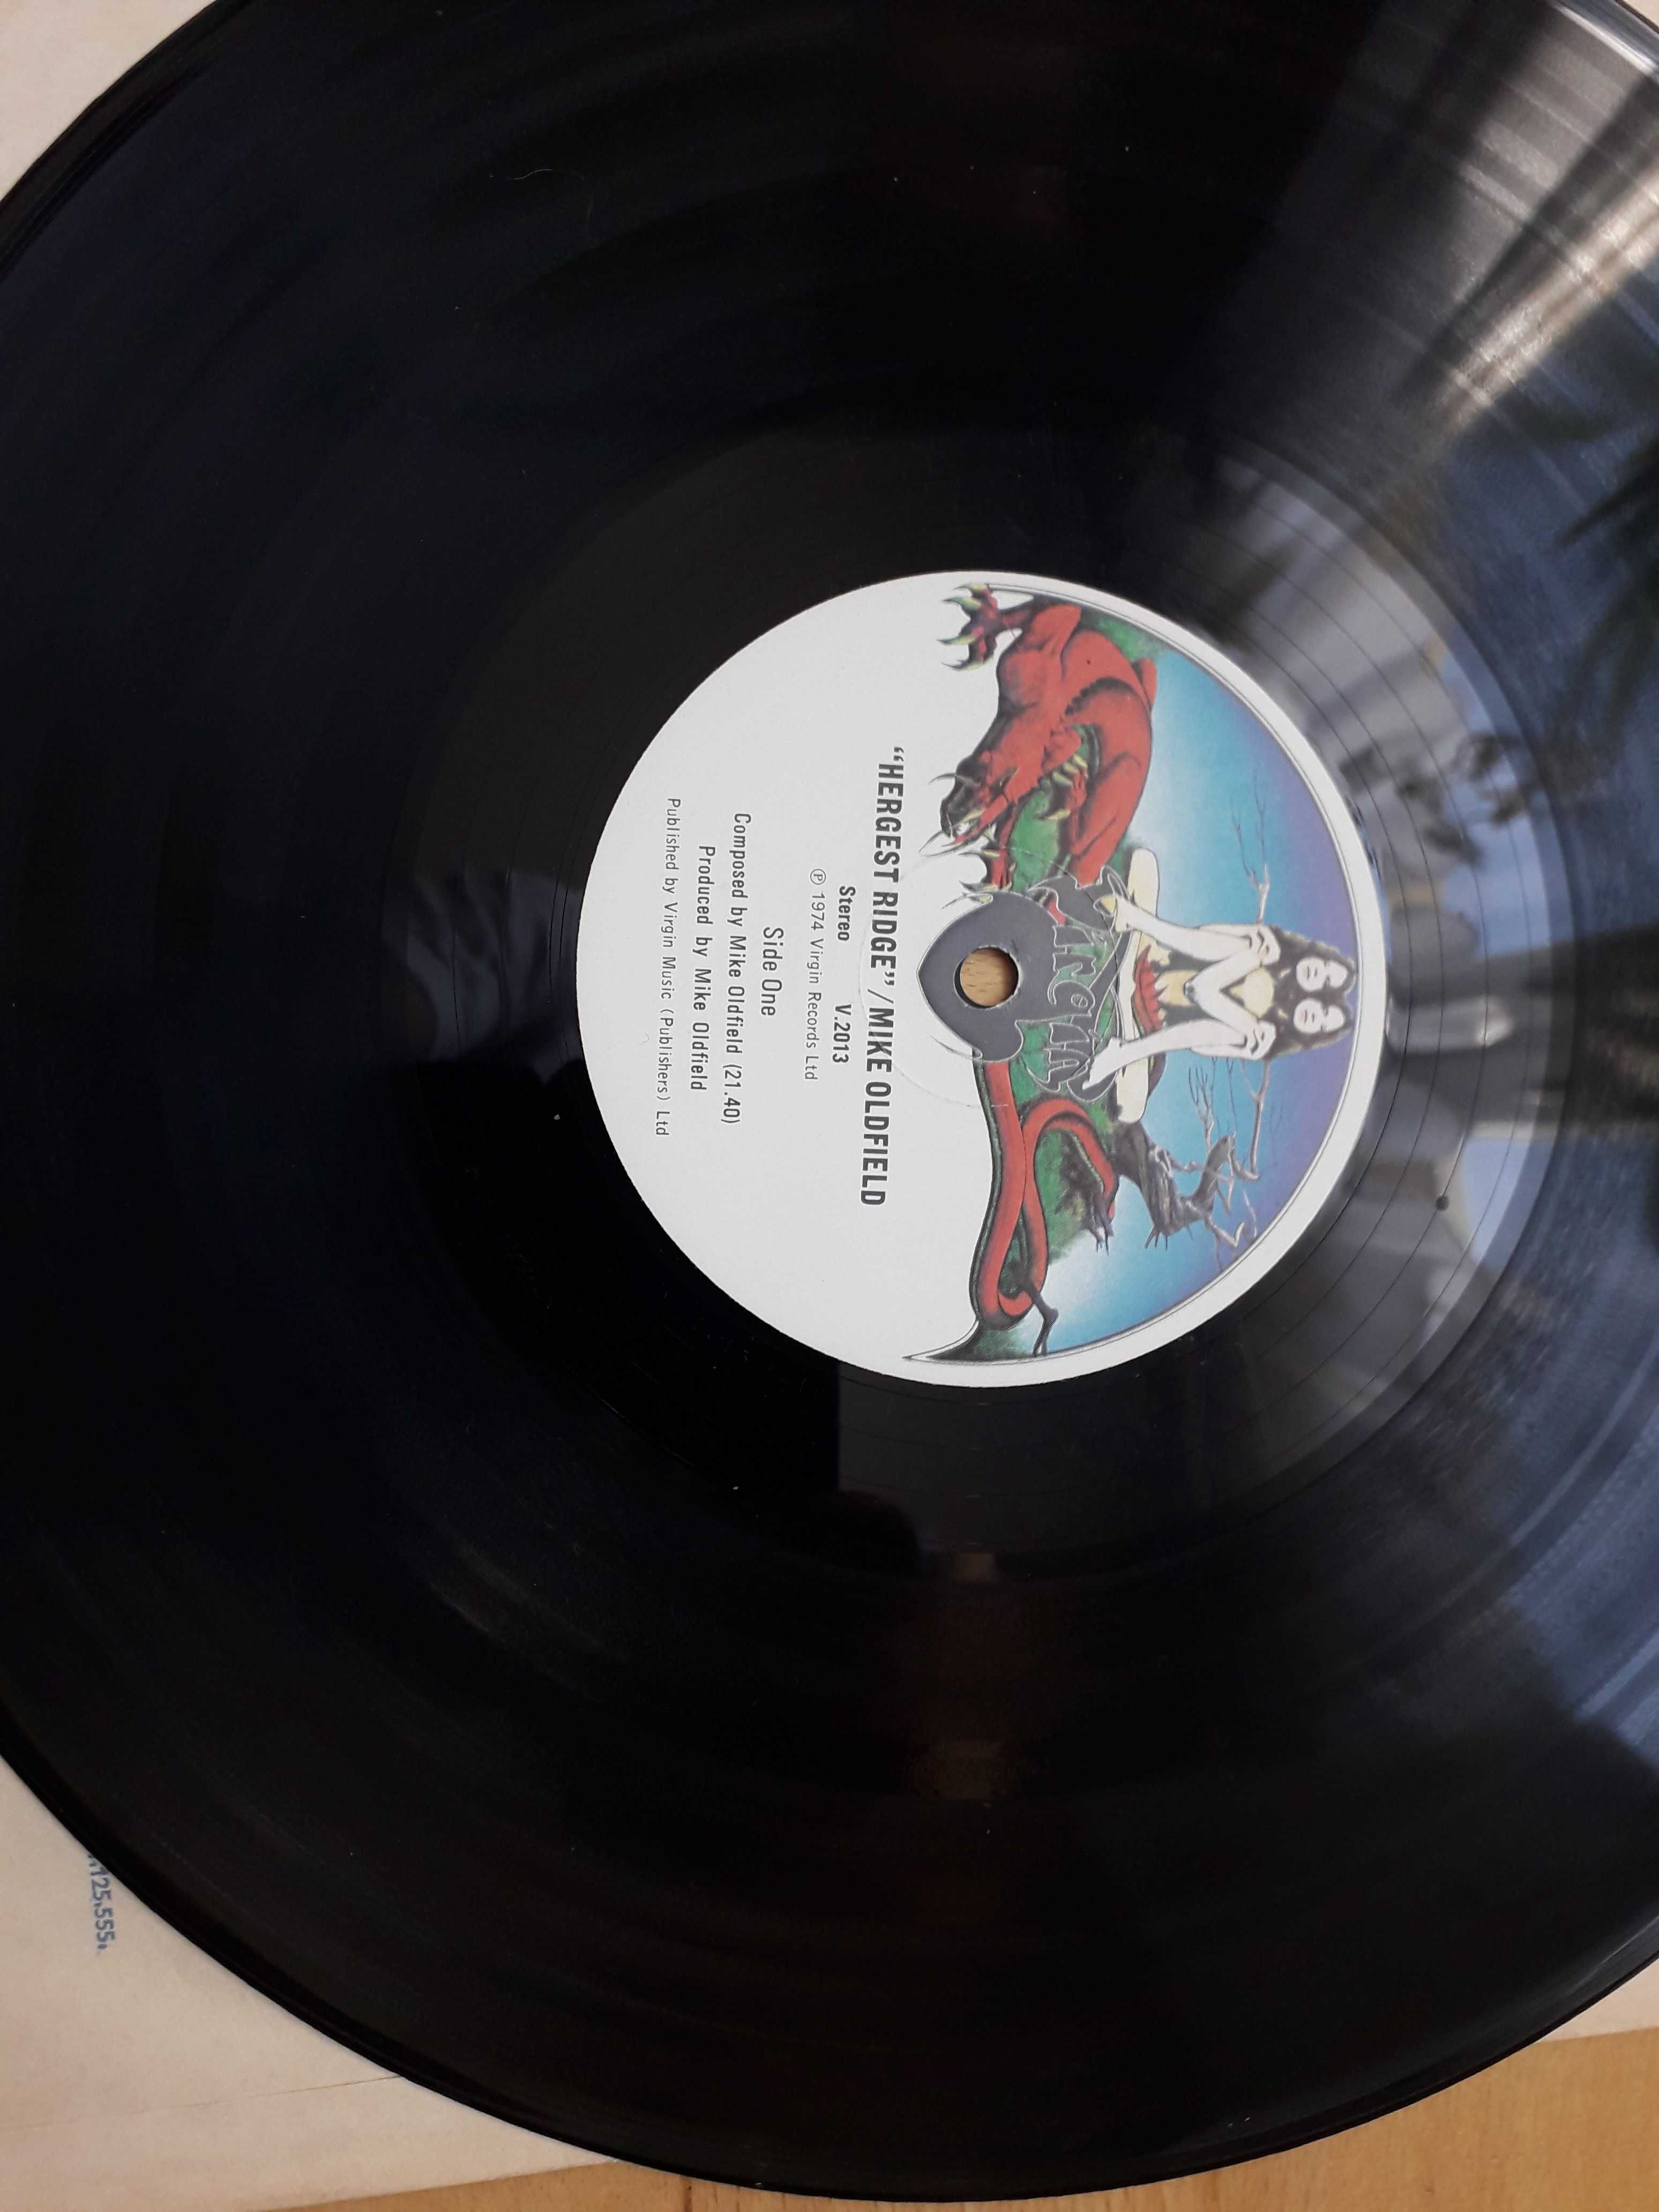 Mike Oldfield -dwie płyty Hergest Ridge + Crises –Virgin Rekords 1974r